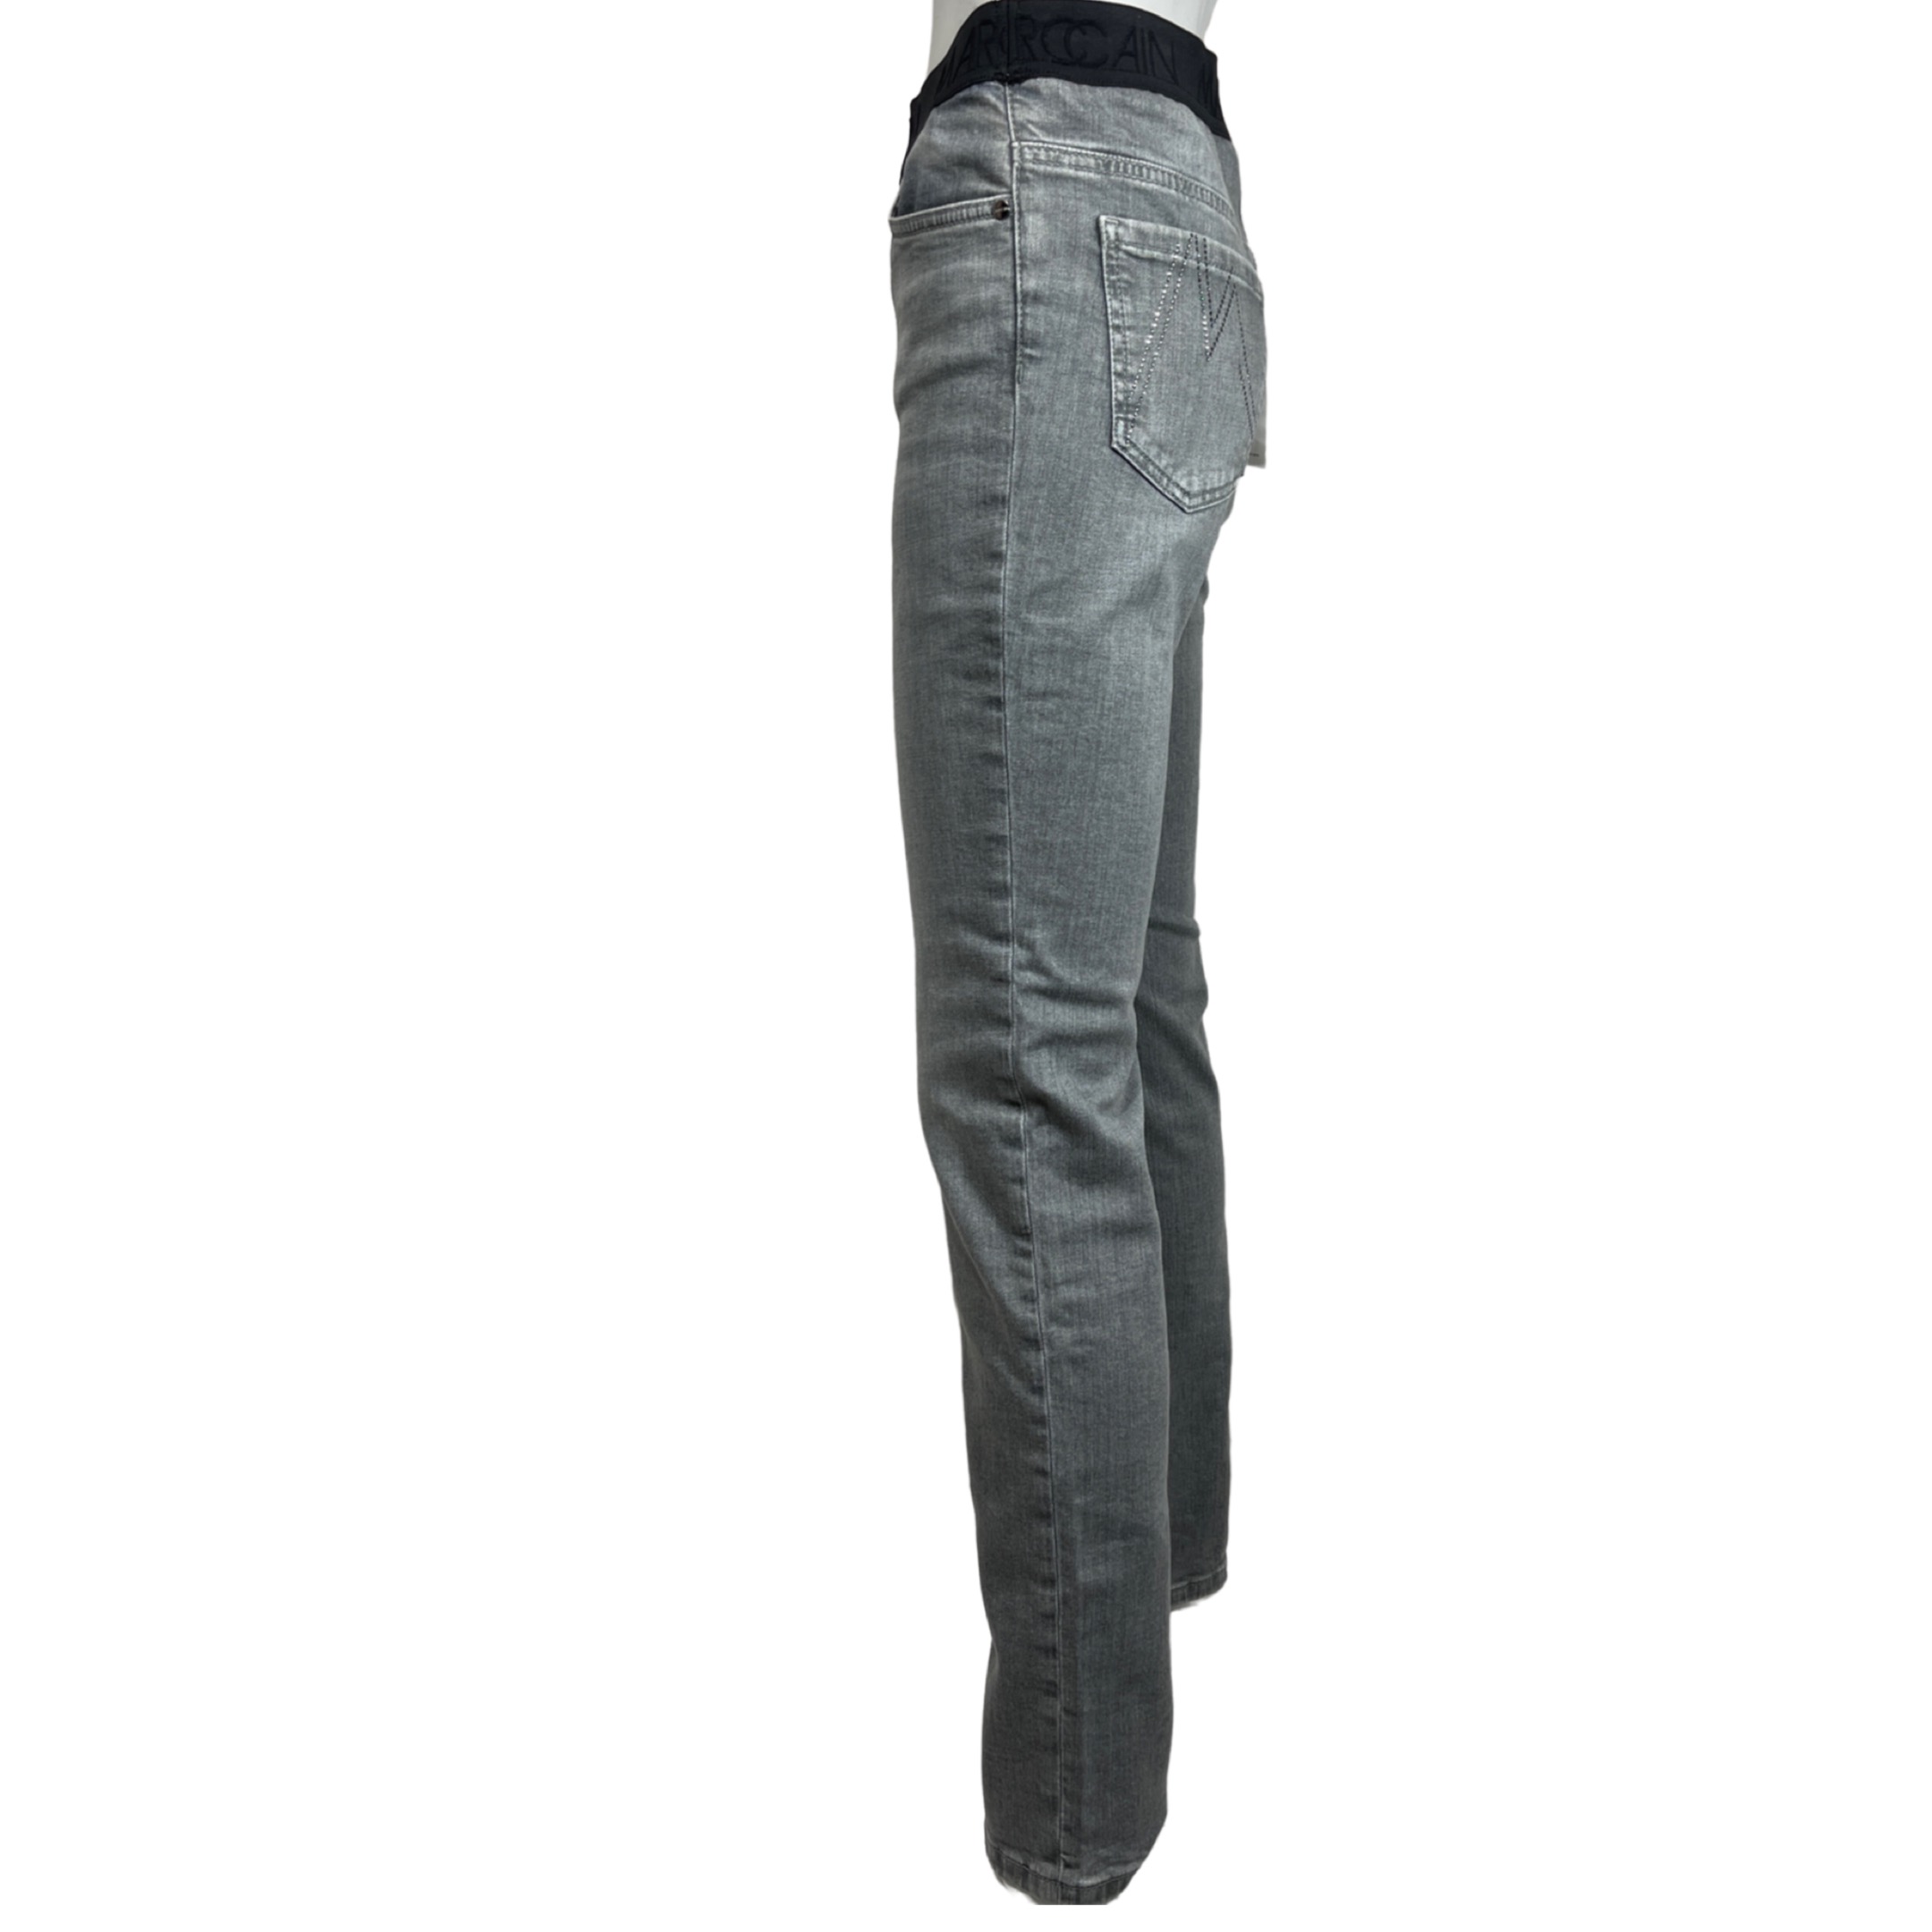 MARC CAIN UP 82.05 D74 Damen Jeans Rethink Together SIENA Slim Fit Grau 820